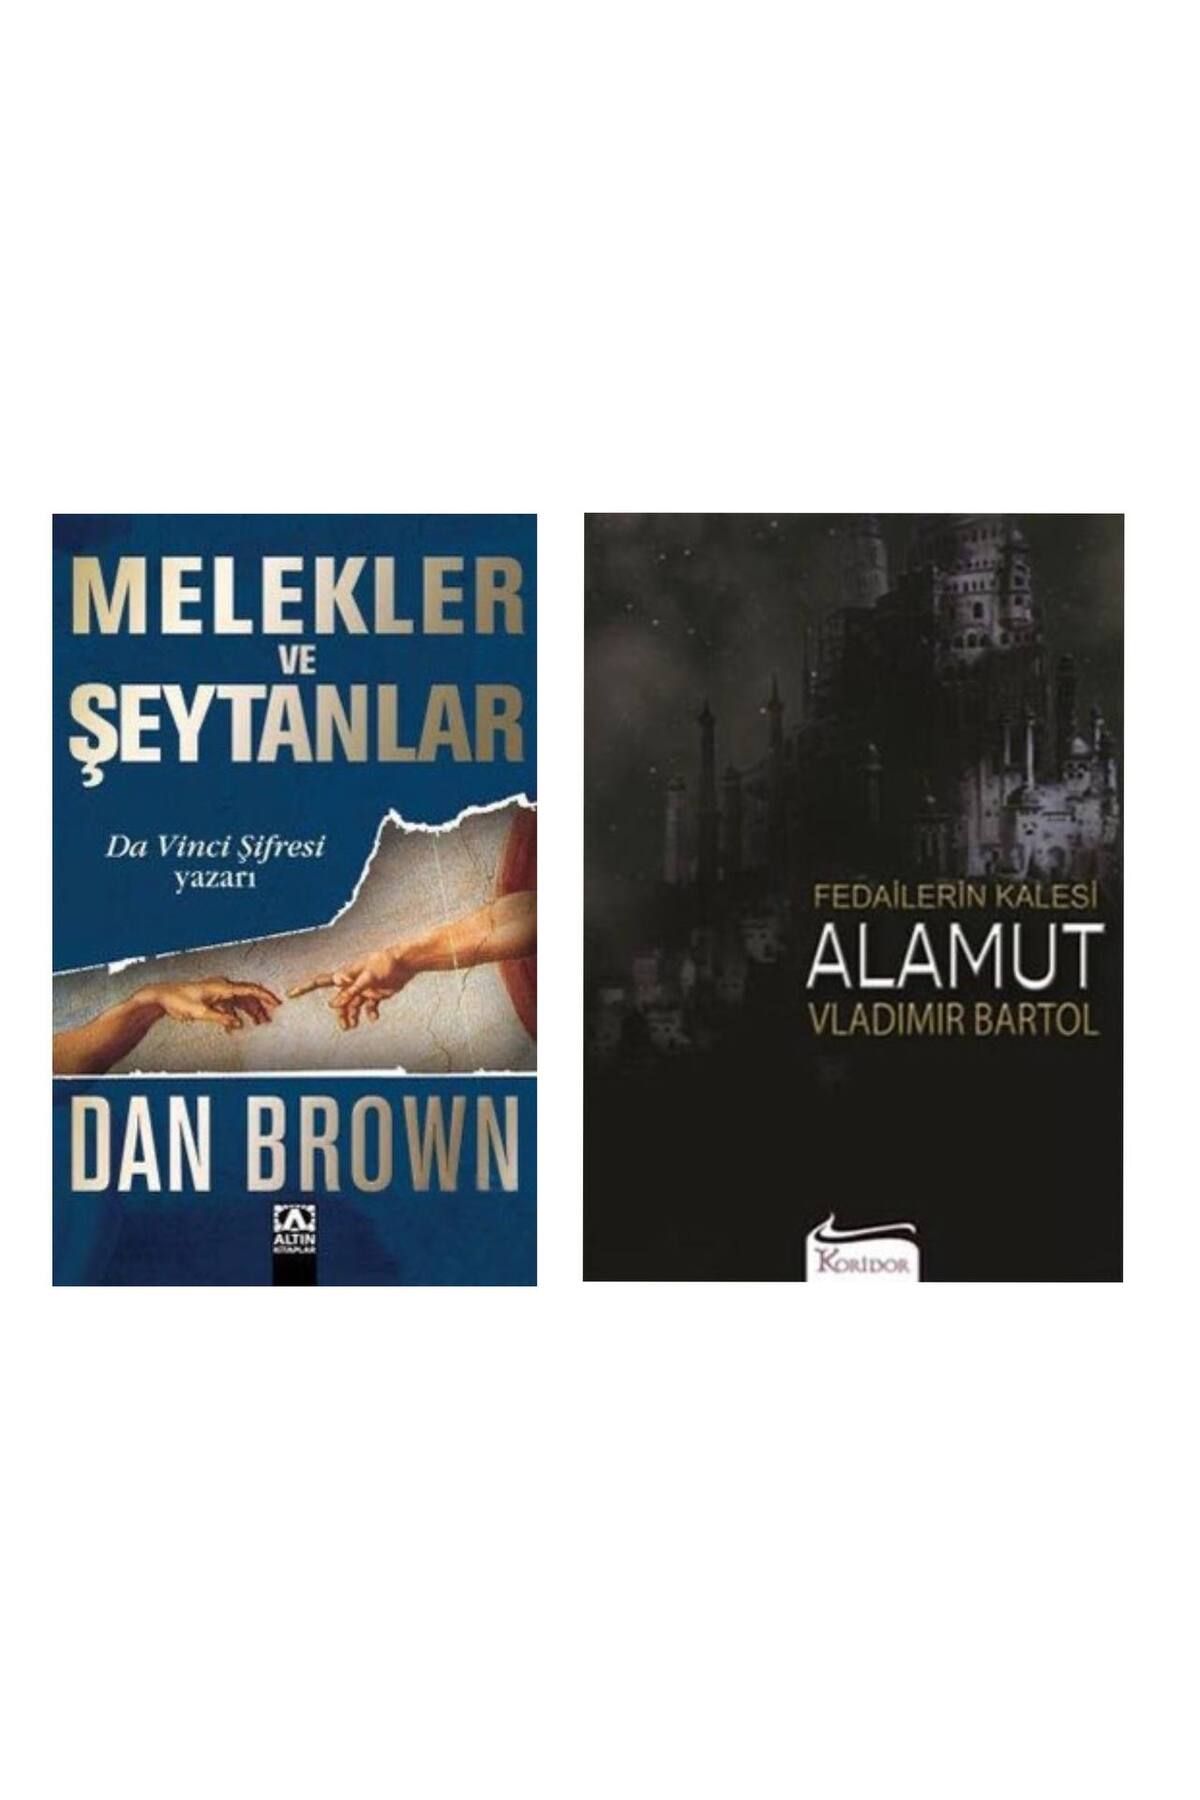 Altın Kitaplar Melekler ve Şeytanlar Dan Brown - Fedailerin Kalesi Alamut Vladimir Bartol